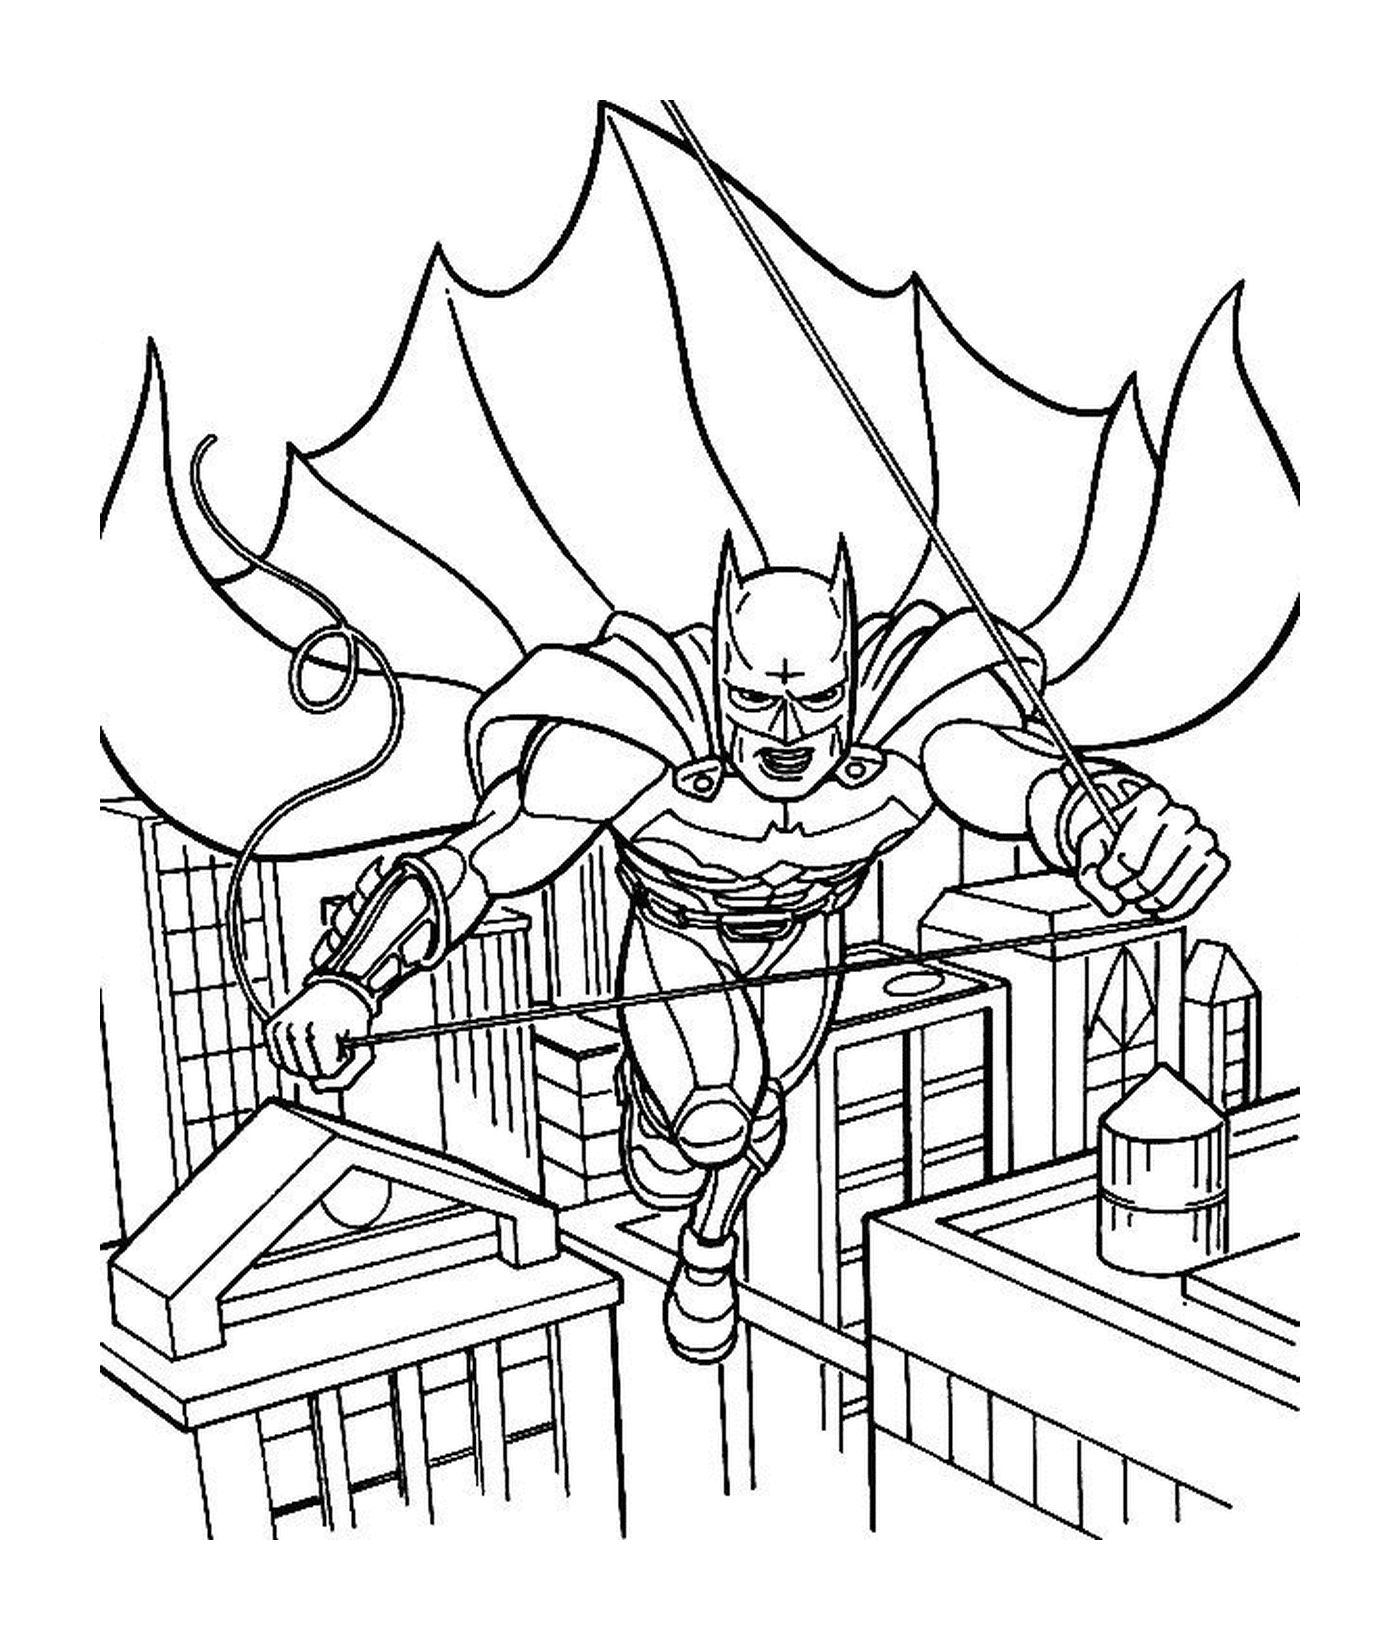  Batman voando no ar 